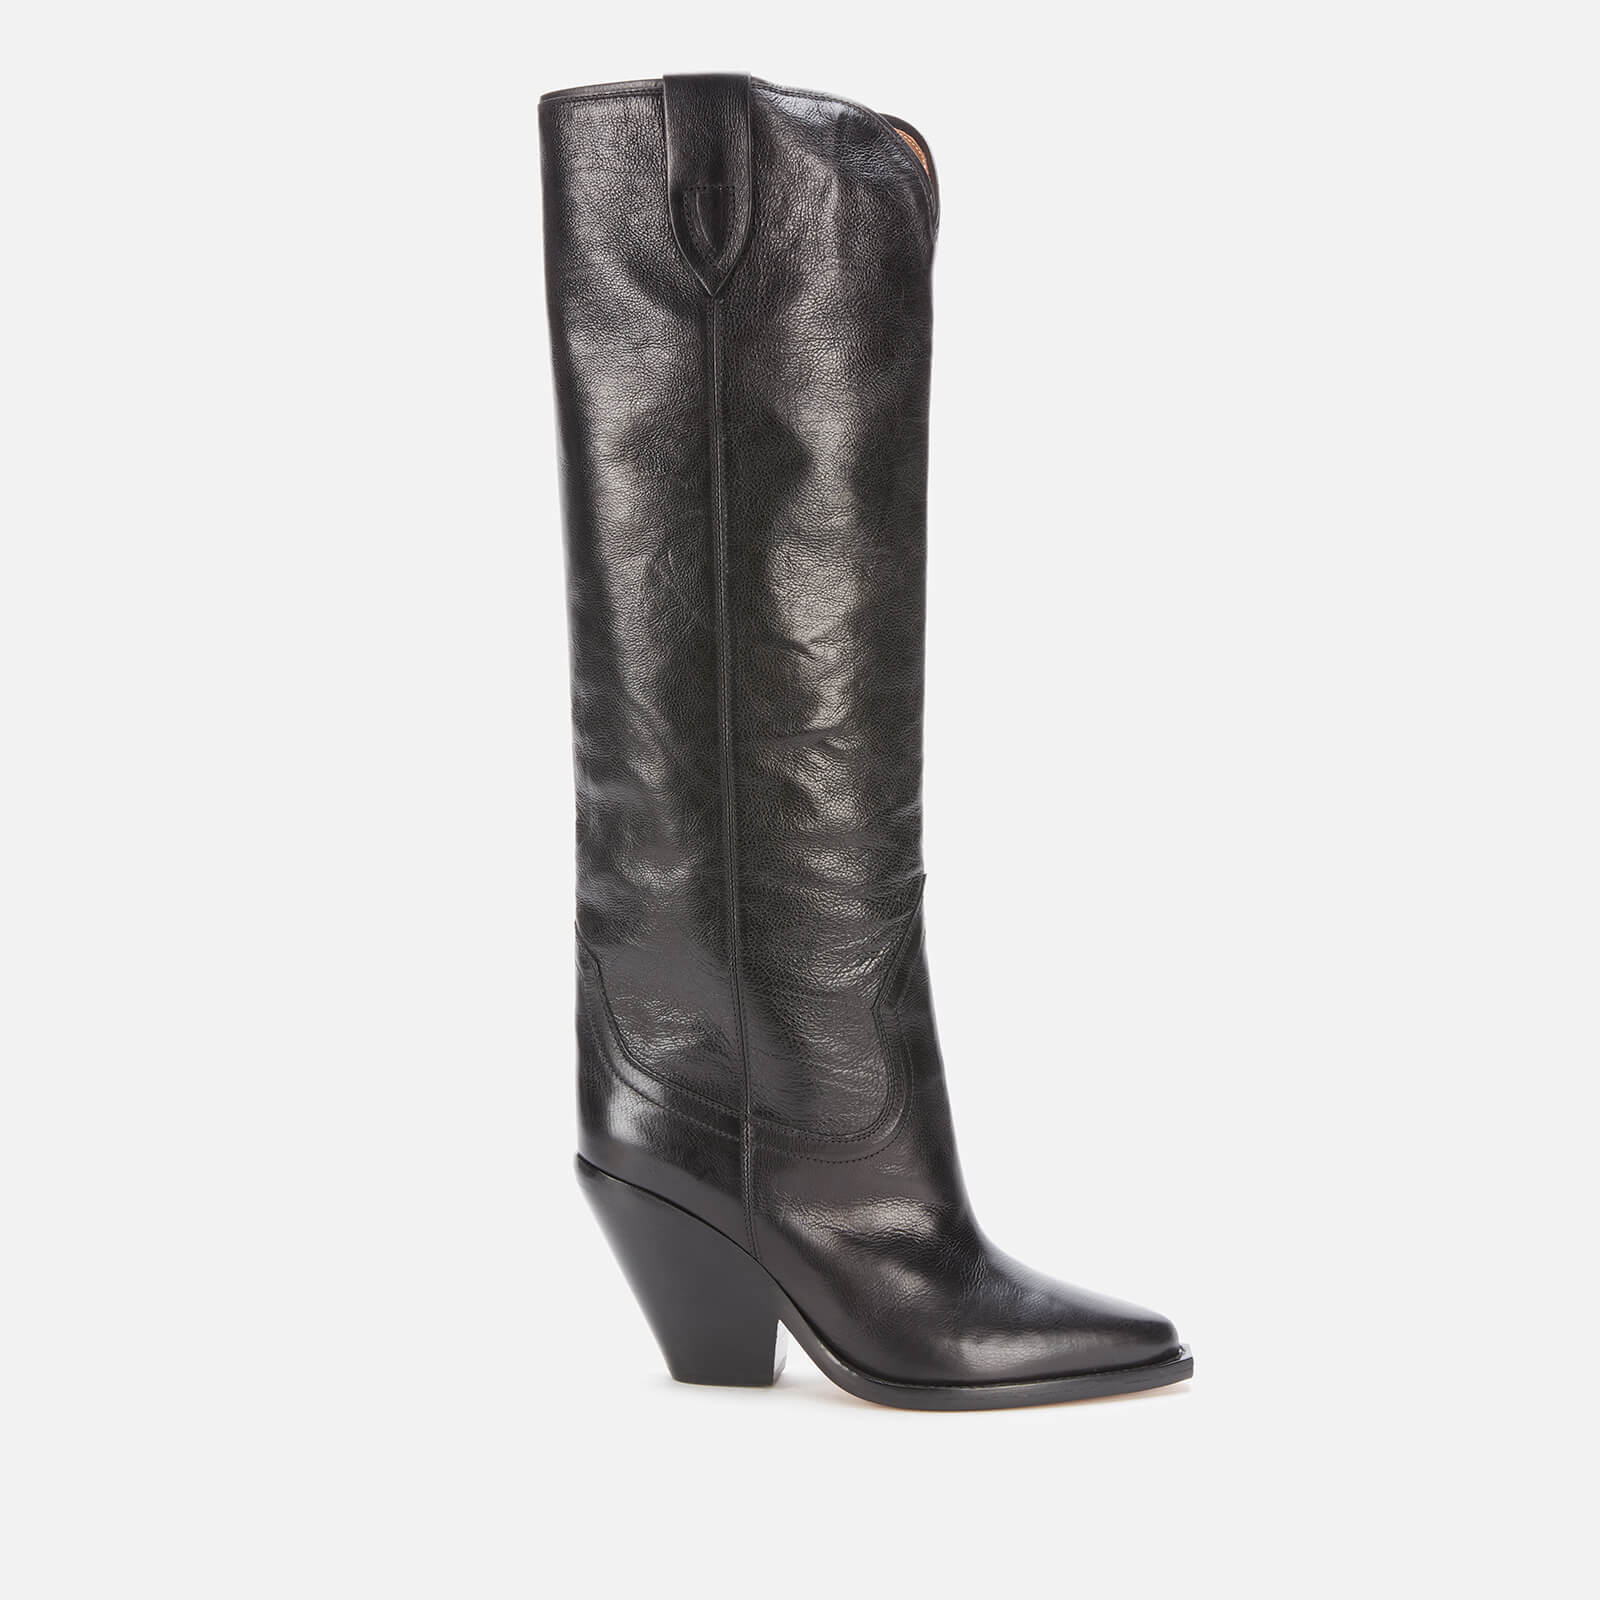 Isabel Marant Women's Lomero Leather Knee High Boots - Black - UK 3